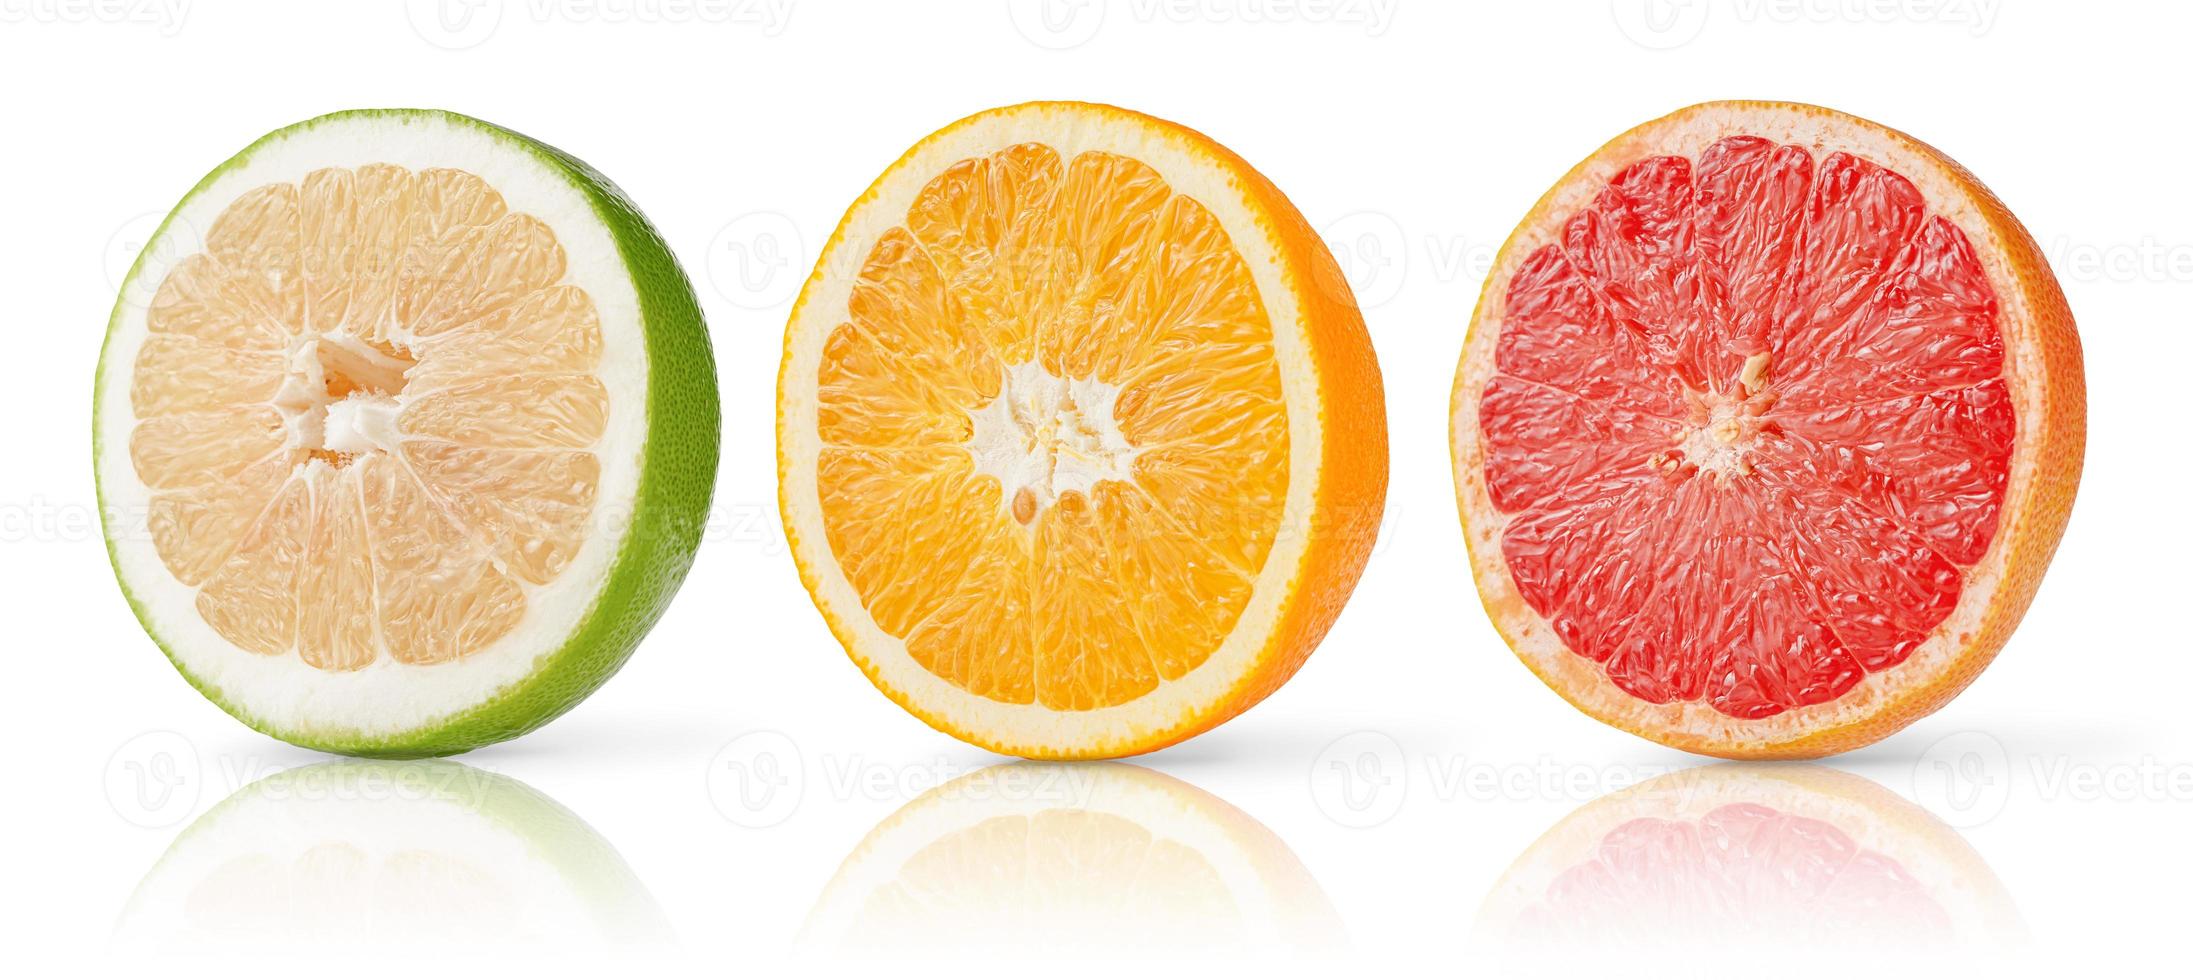 citrusfrukter halverar samling av grapefrukt, apelsin och sötnos isolerad på vit bakgrund. foto